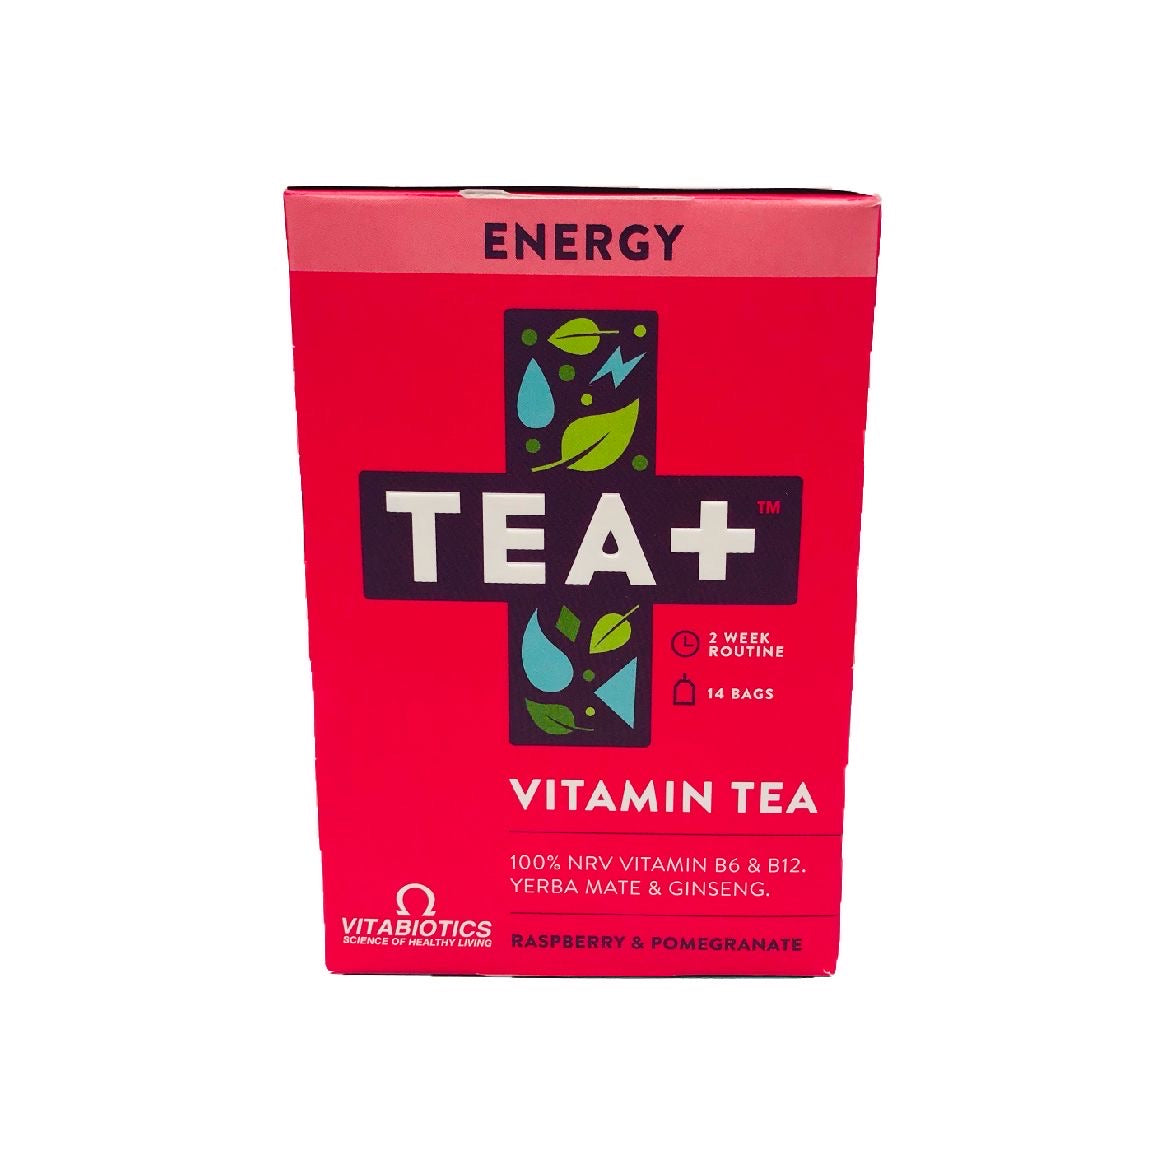 Tea+ Vitamin Infused Tea With Vitabiotics - Energy - Sweet Victory Products Ltd